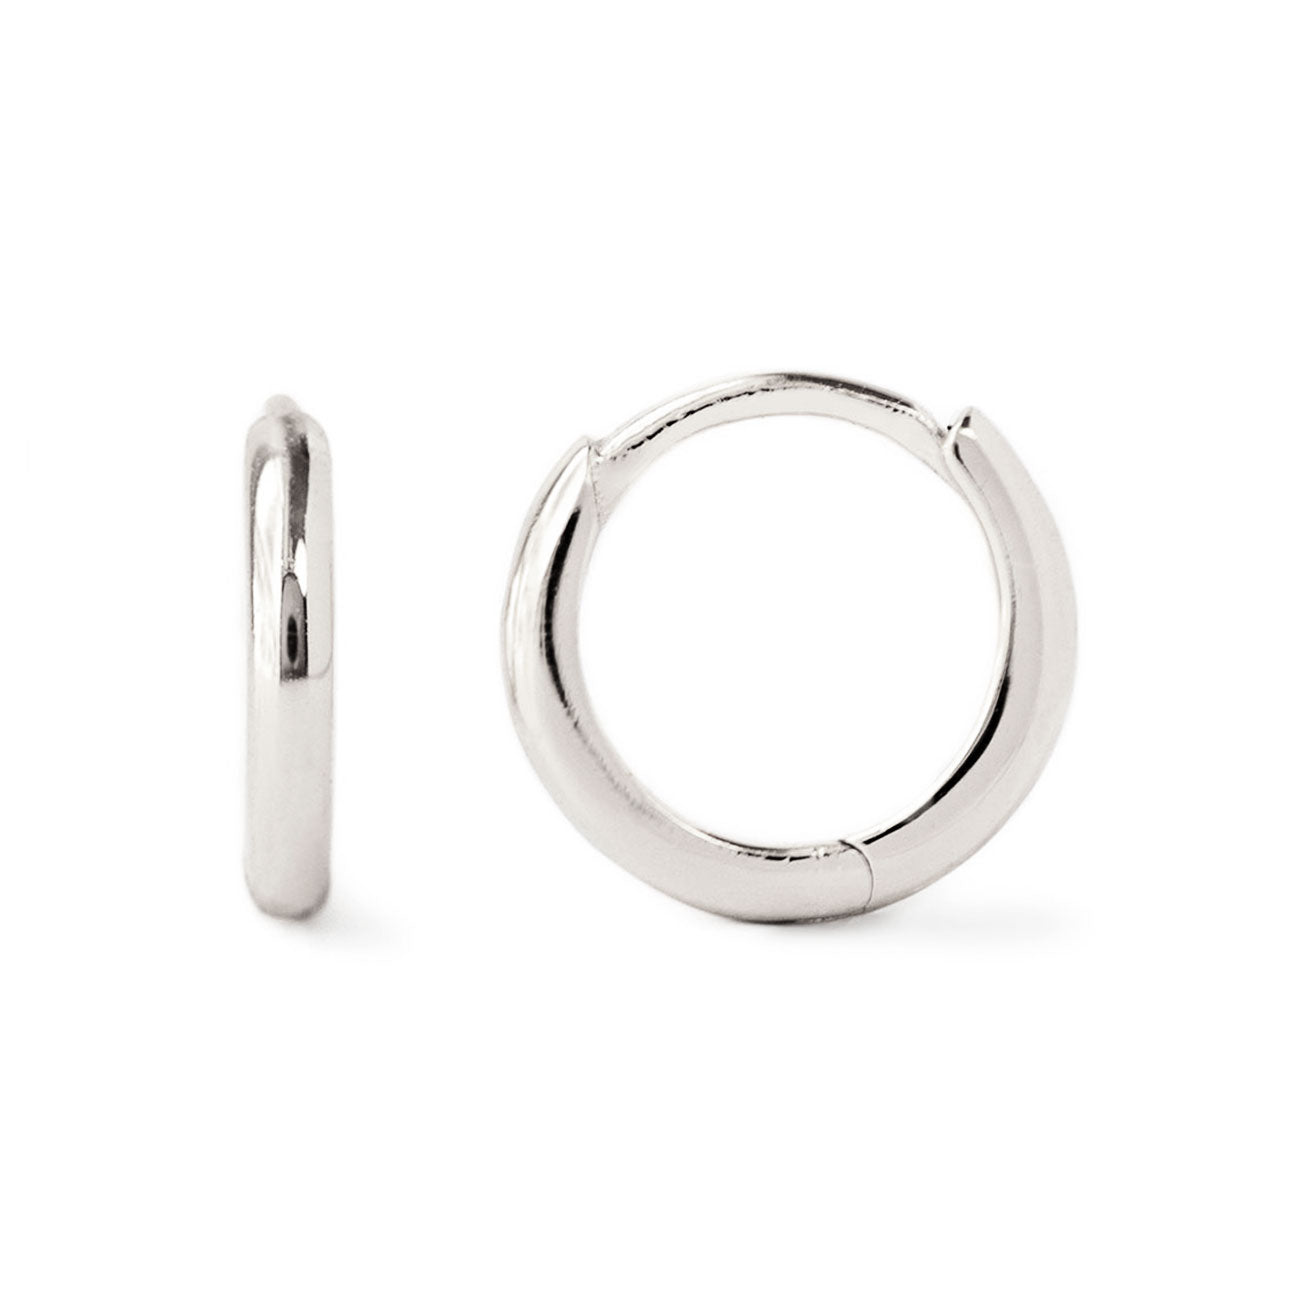 Buy Silver Earrings for Women by MYKI Online | Ajio.com